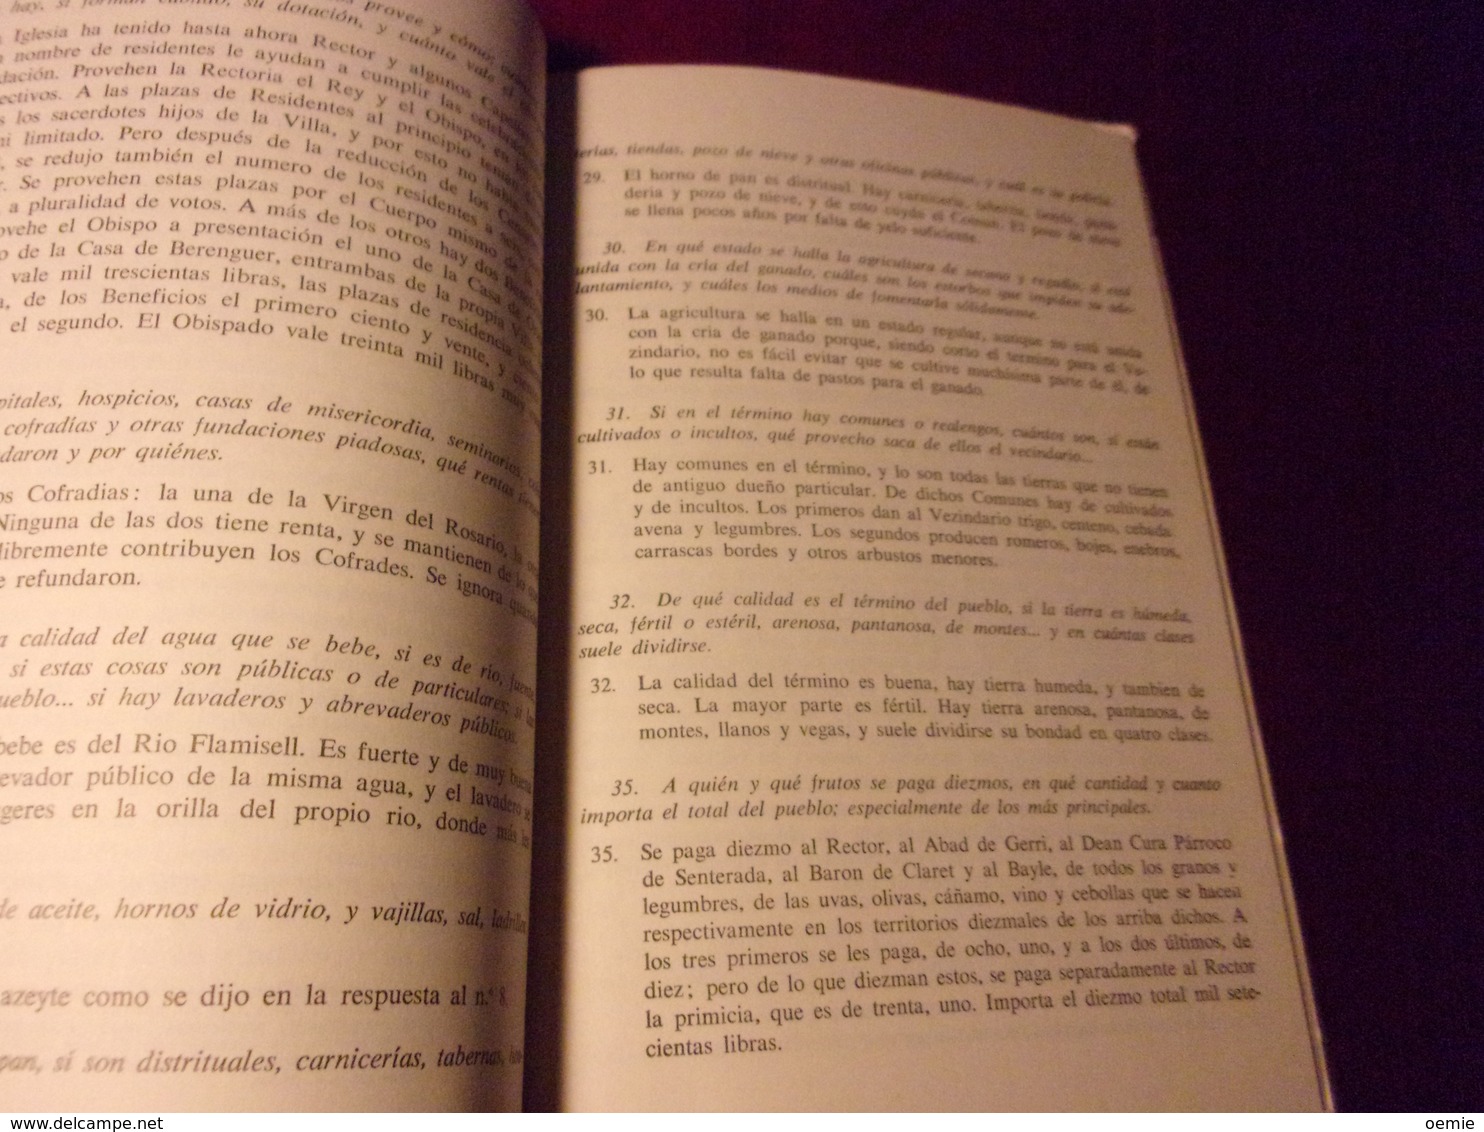 RESPOSTA DE LA POBLA DE SEGUR AL QUESTIONARI DE FRANCISCO DE ZAMORA  1790  EDITION COMU DE PARTICULARS  1970 - Culture